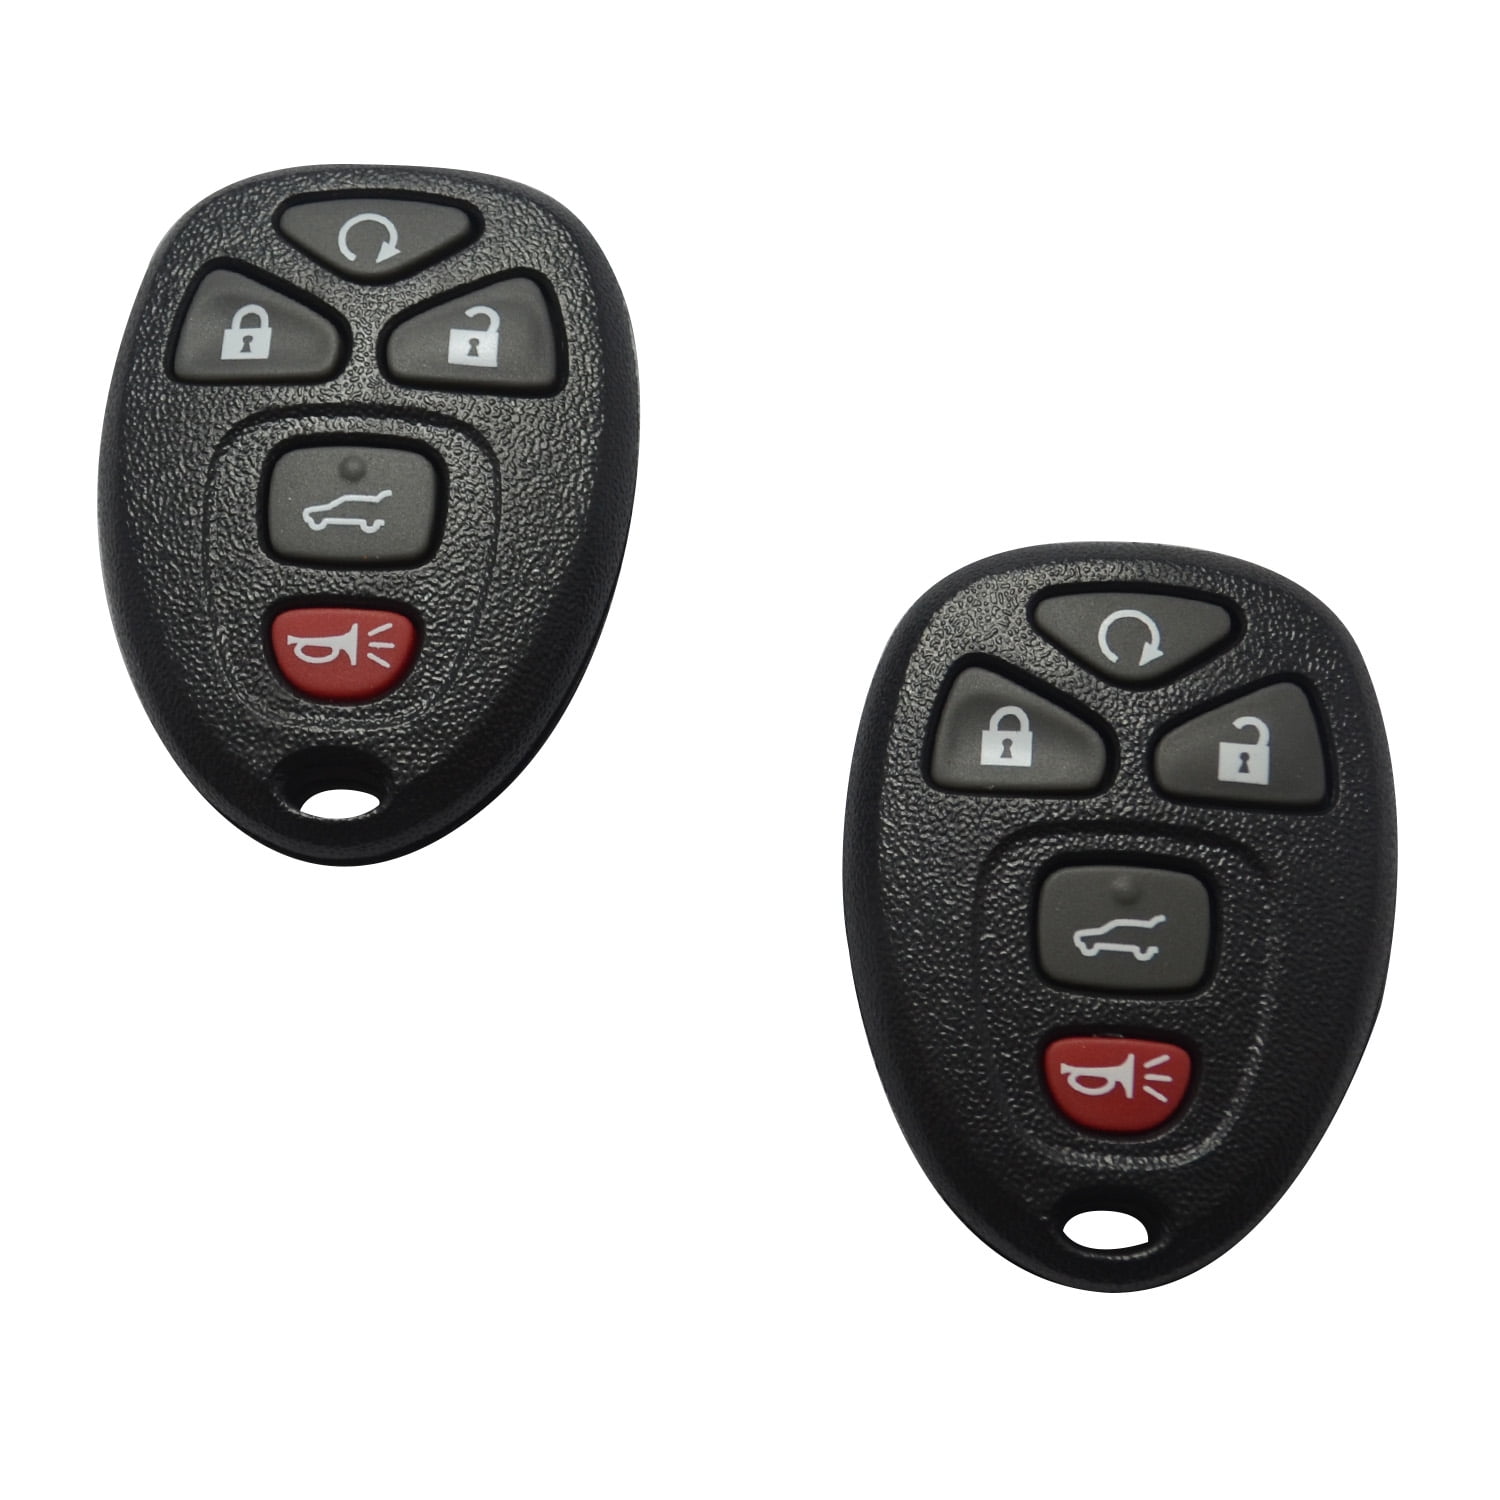 2 For 2006 2007 2008 2009 2010 2011 Chevrolet HHR Keyless Entry Remote Key Fob